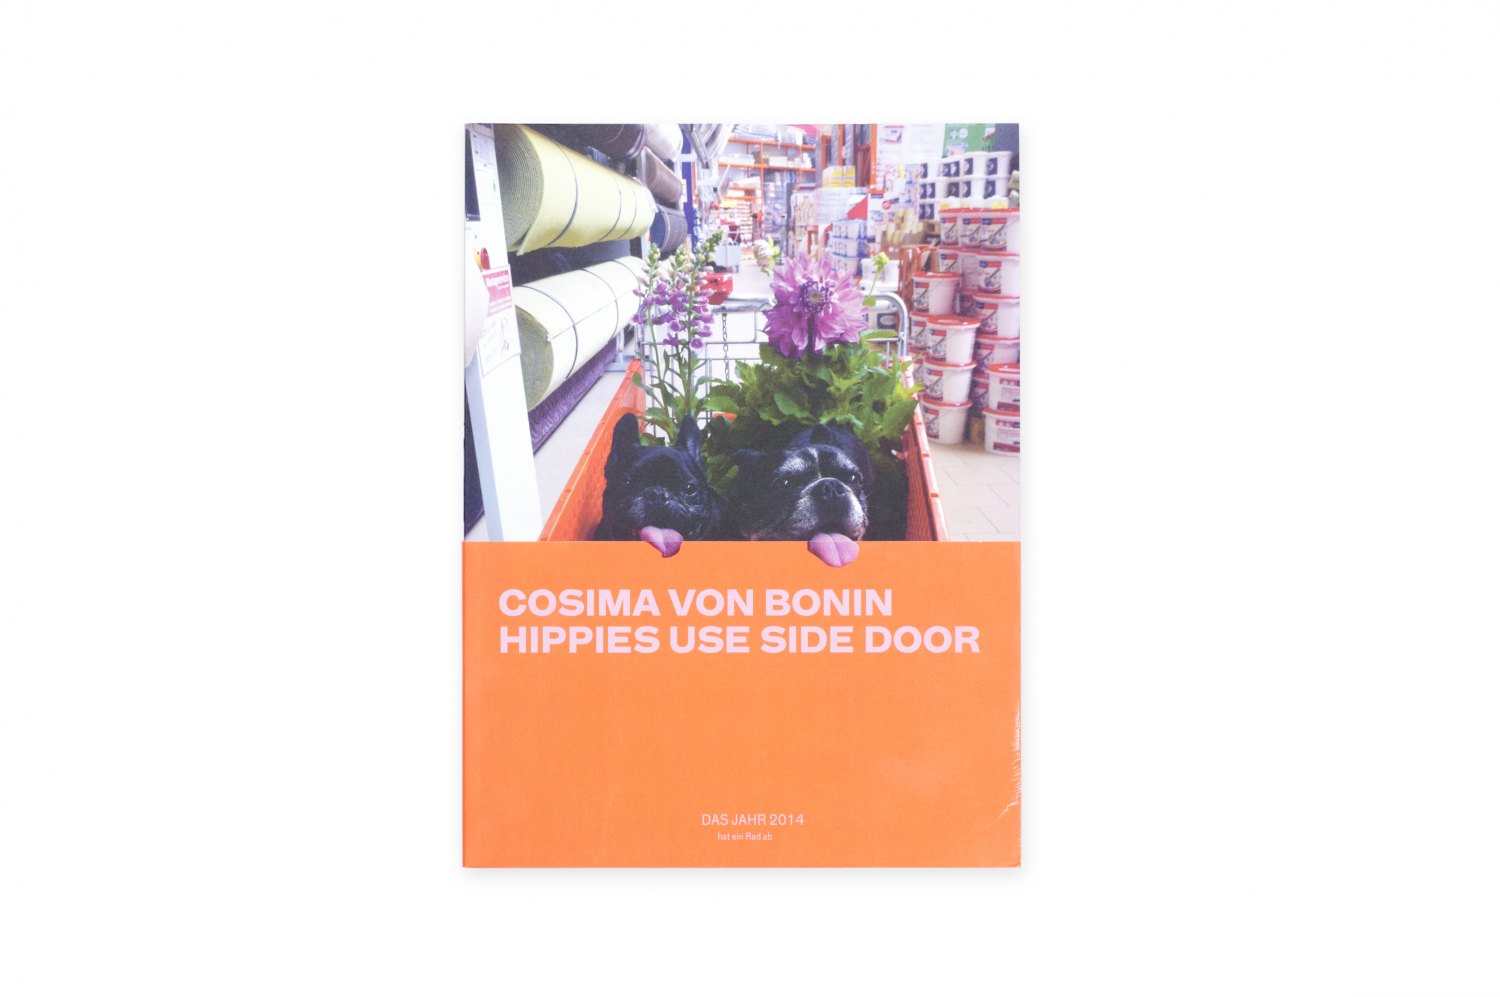 Cosima von Bonin, Hippies Use Side Door. Das Jahr 2014 hat ein Rad ab Catalogue, mumok, Vienna 2014/15, 224 p. ISBN 978-3-86335-631-6